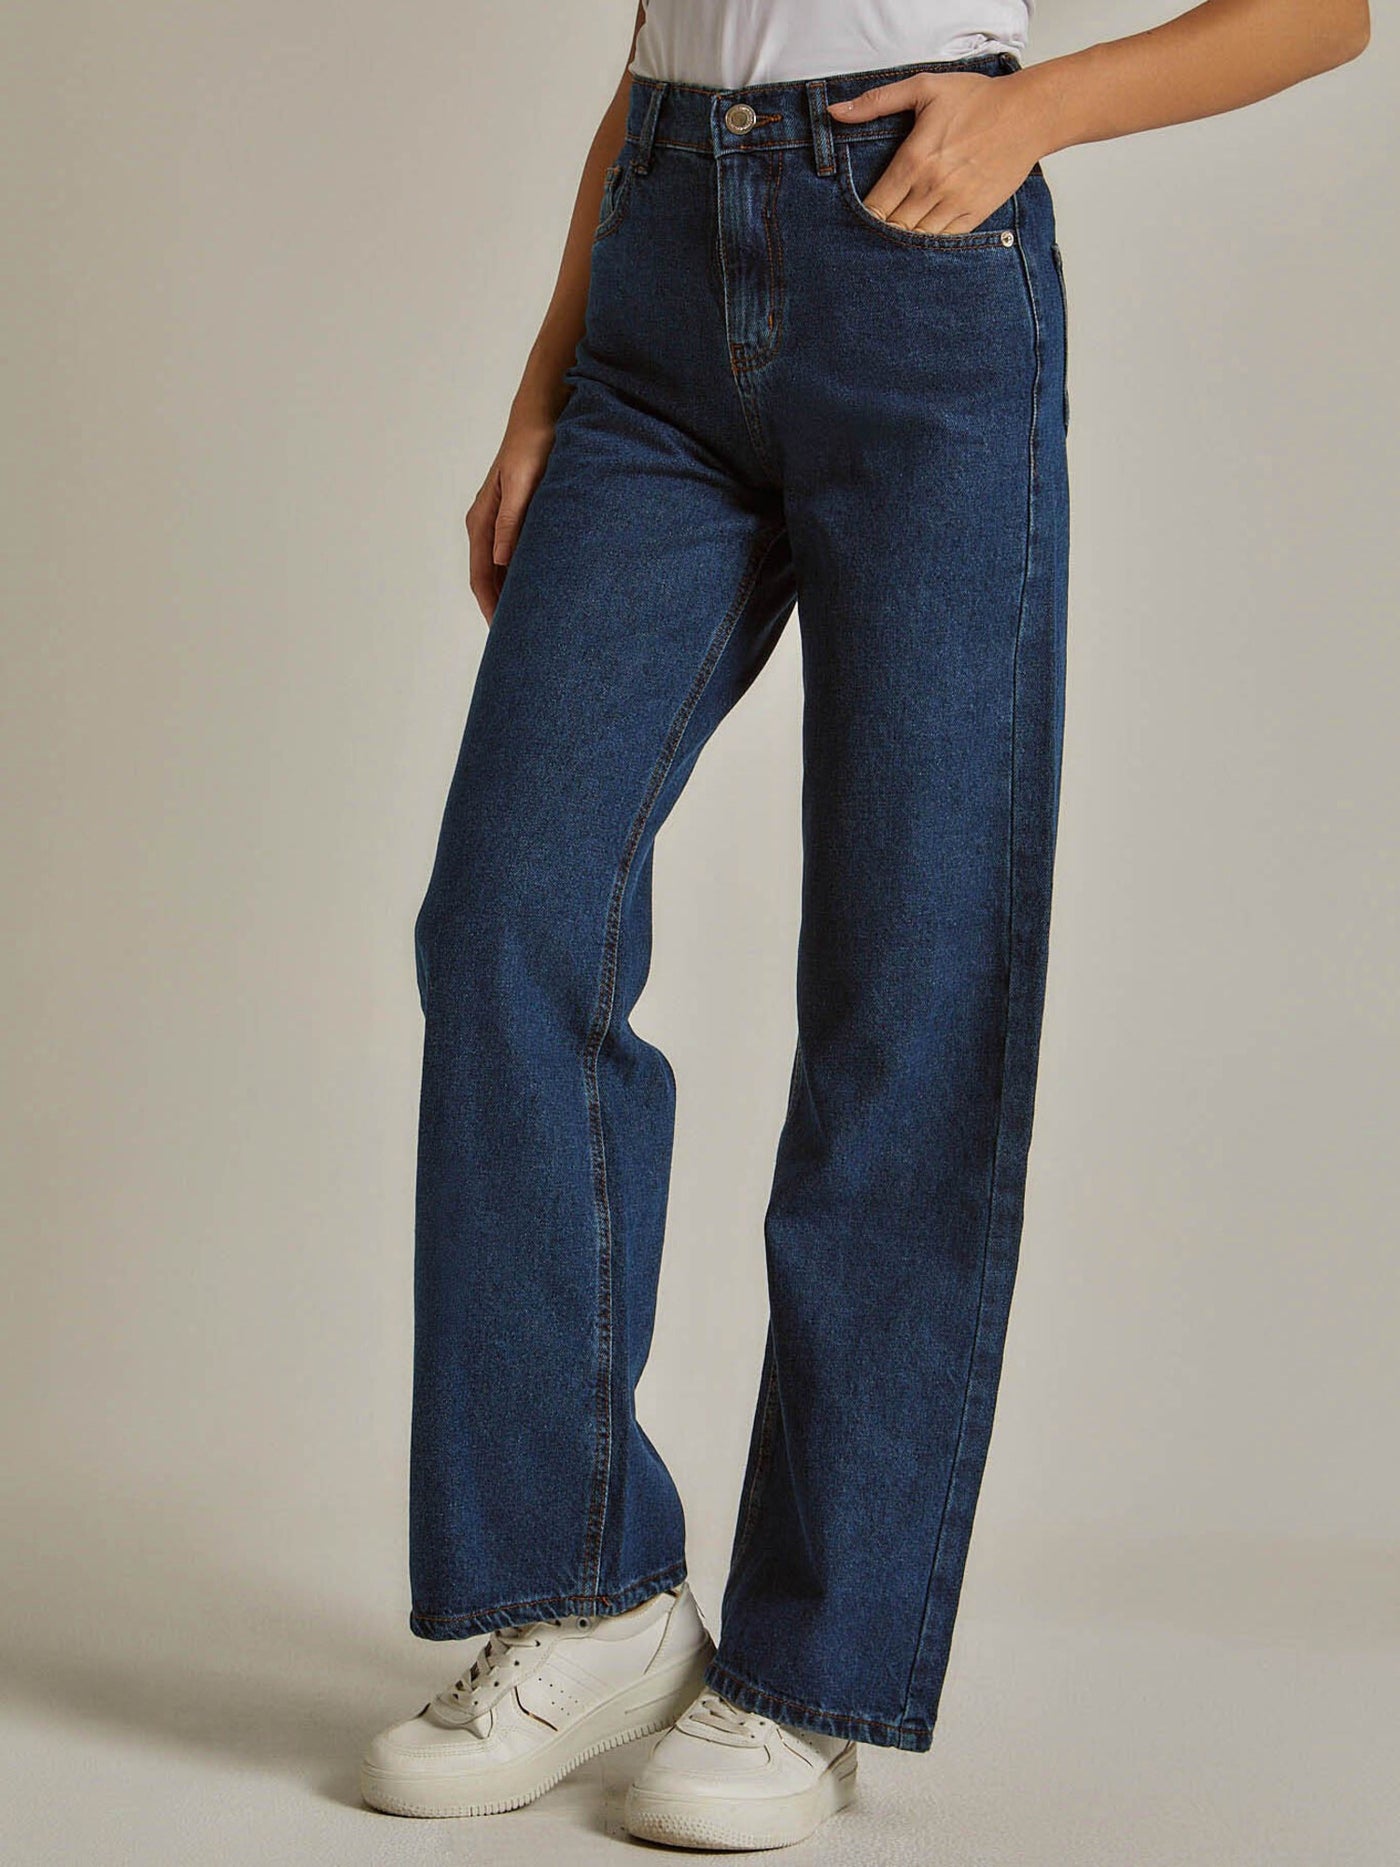 Jeans - Wide Leg - High Waist